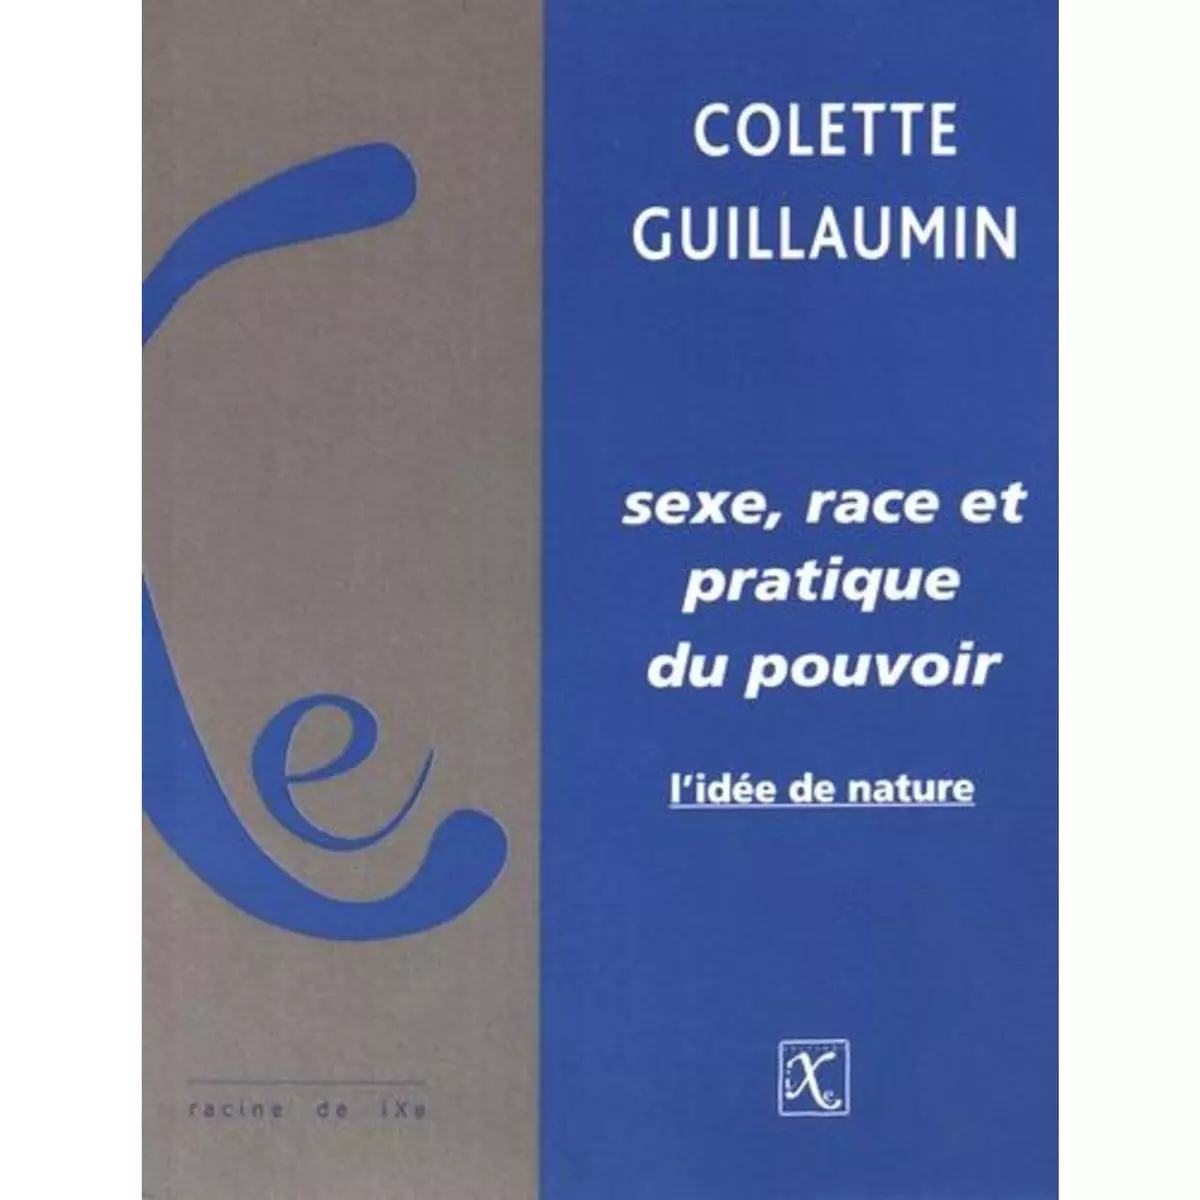  SEXE, RACE ET PRATIQUE DU POUVOIR. L'IDEE DE NATURE, Guillaumin Colette